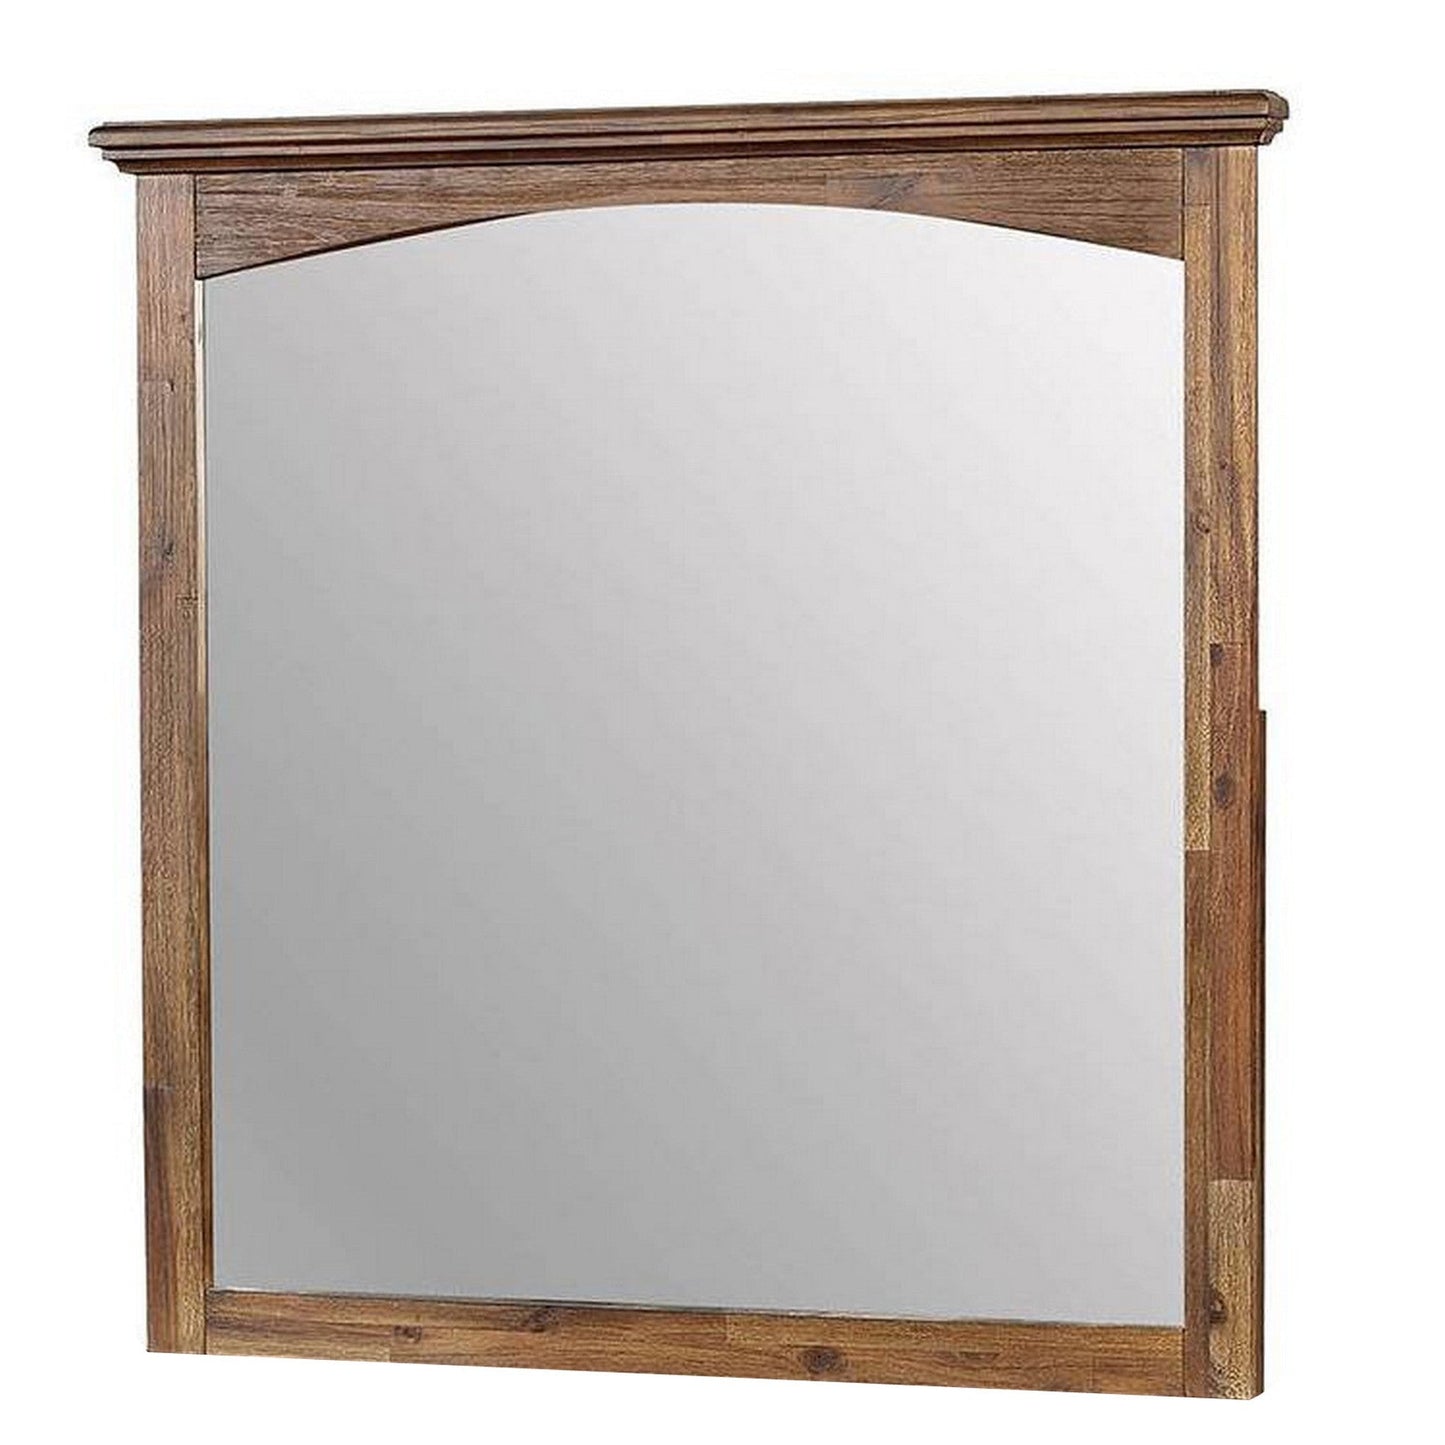 Benzara 37" Dark Oak Transitional Style Wooden Frame Mirror